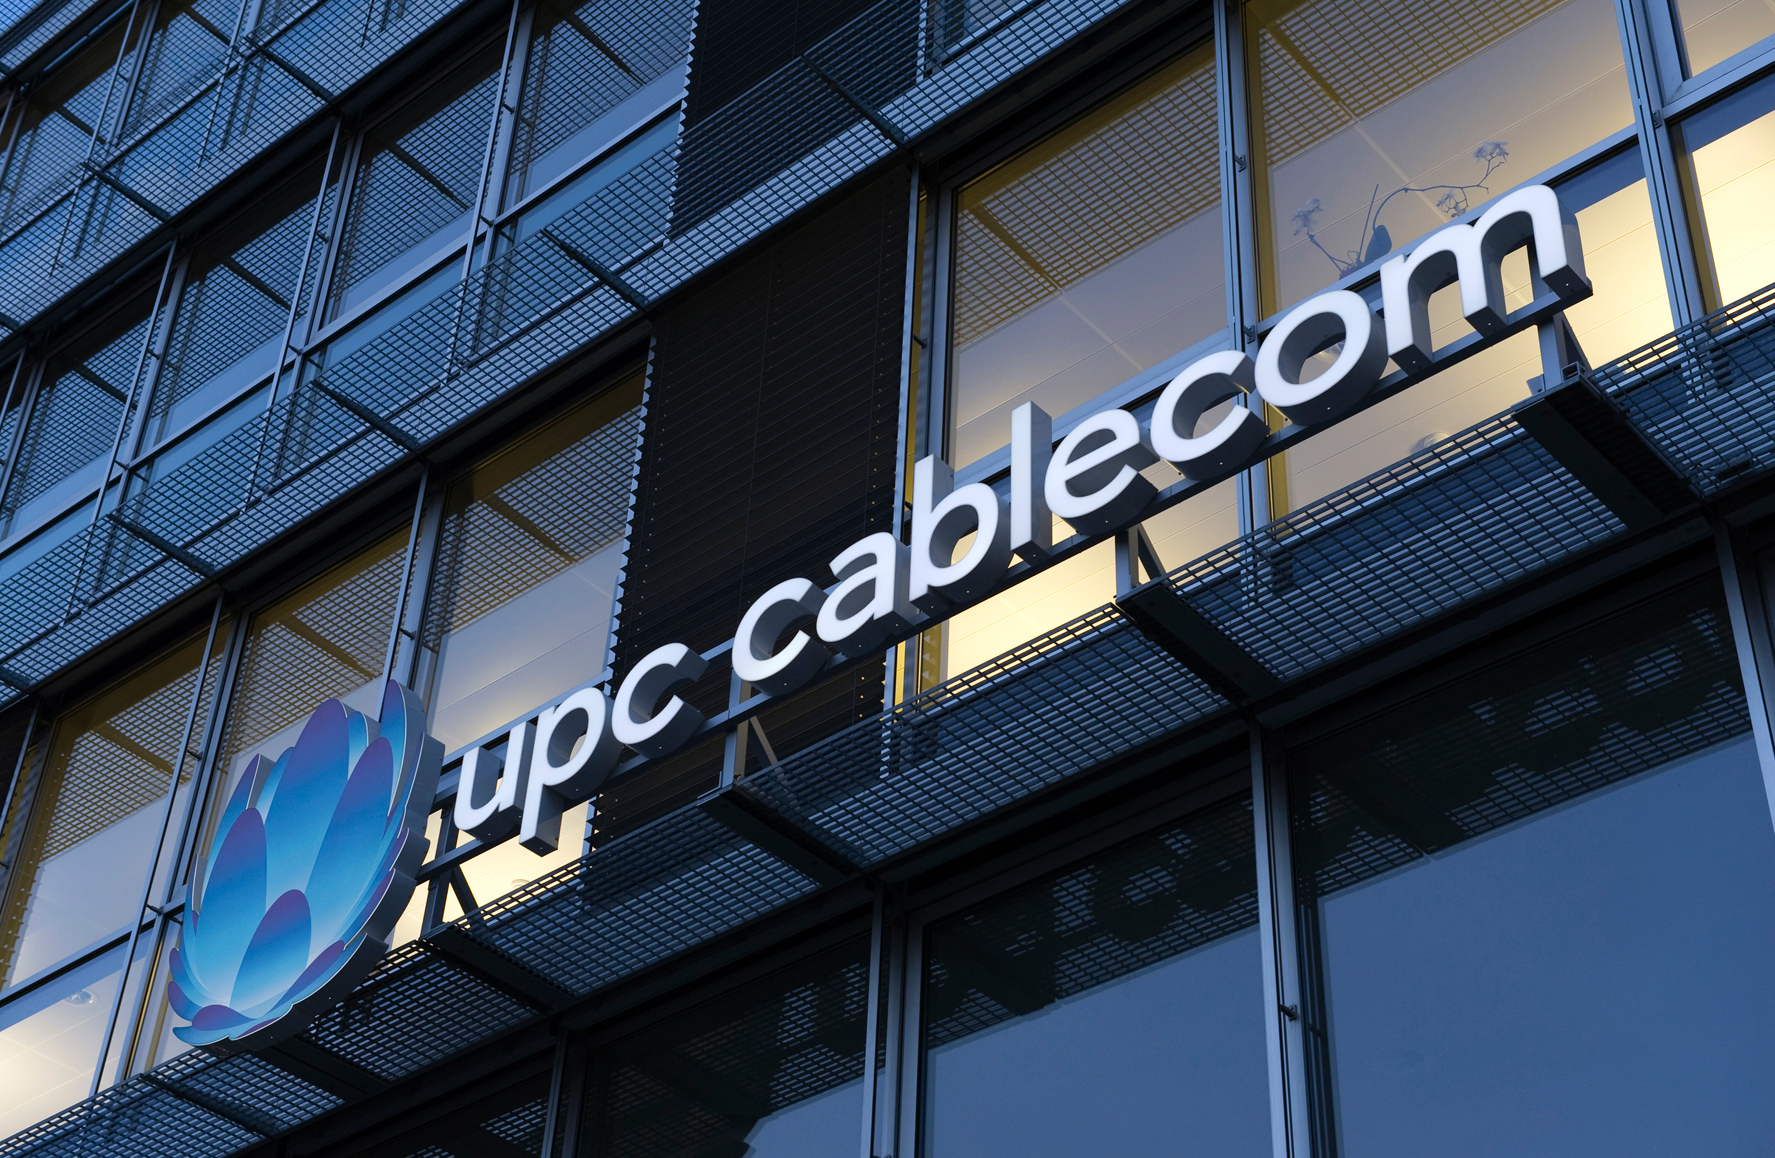 UPC Cablecom will Glasfasernetzausbau mit Millioneninvestition vorantreiben